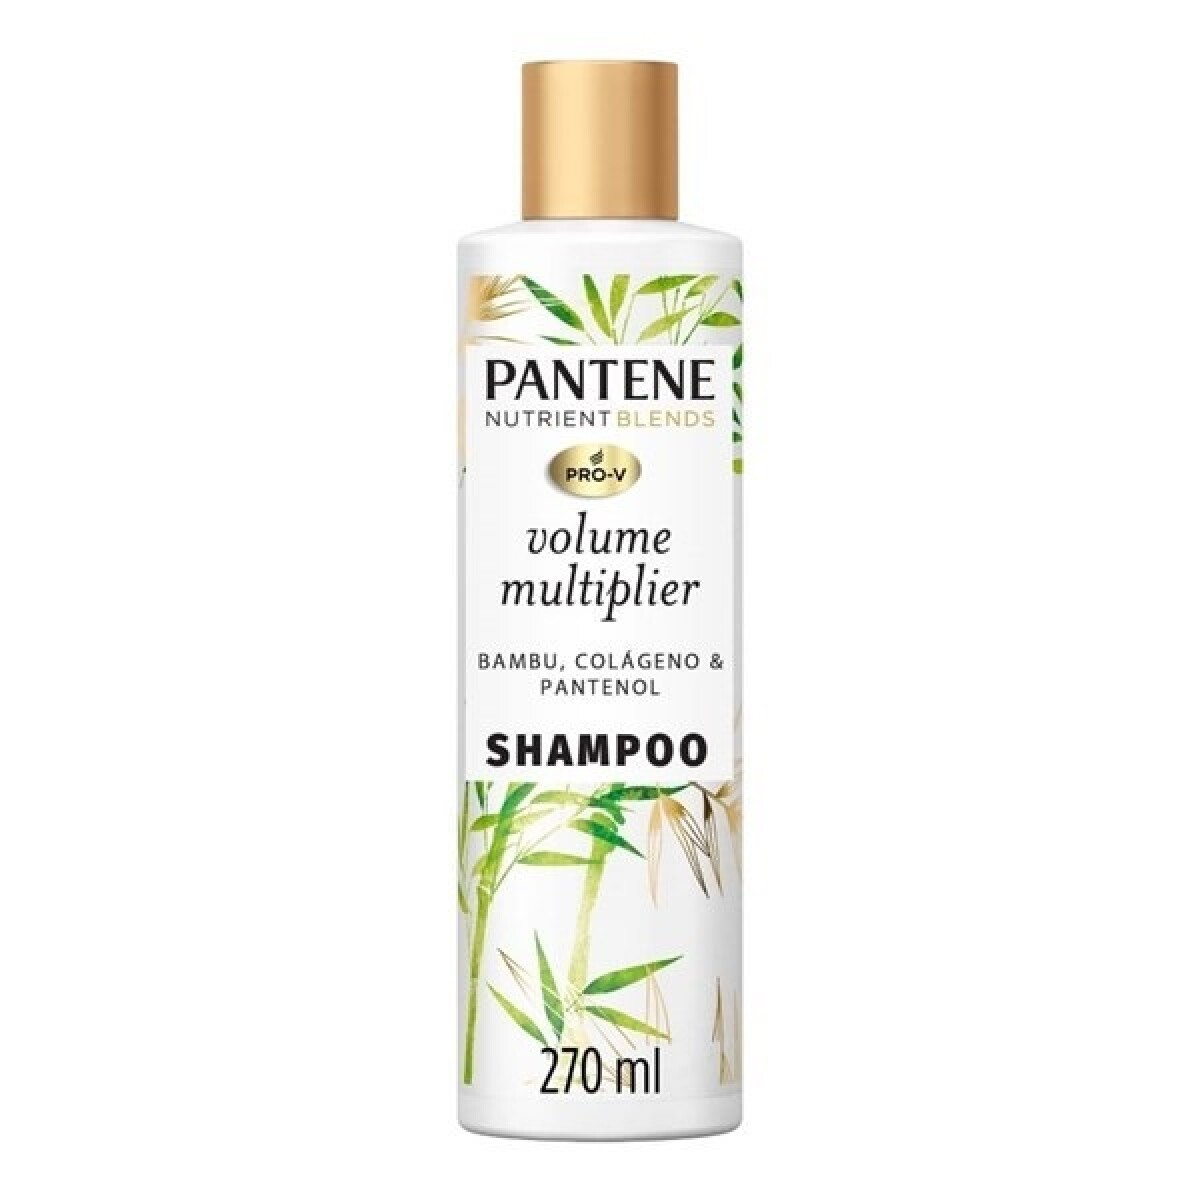 Shampoo Pantene Nut. Blends Volume Multiplier 270 Ml. 